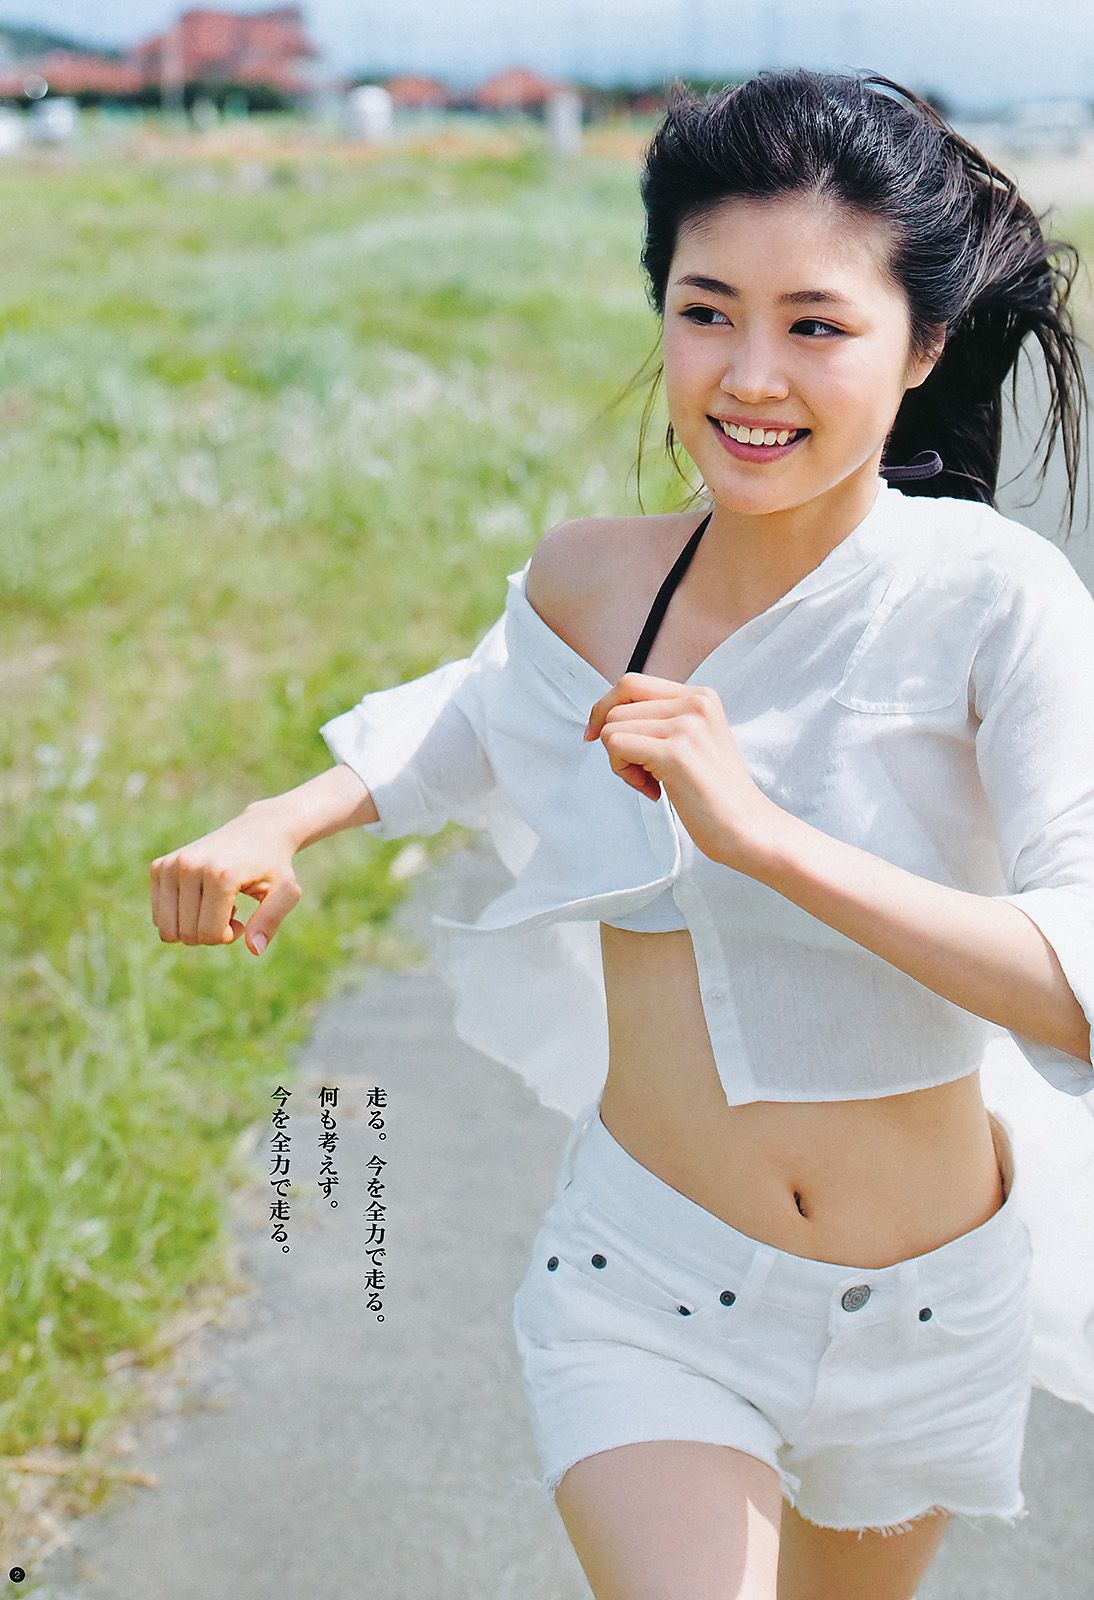 【画像39枚】今や国民的女優・有村架純の超貴重グラビア水着画像02